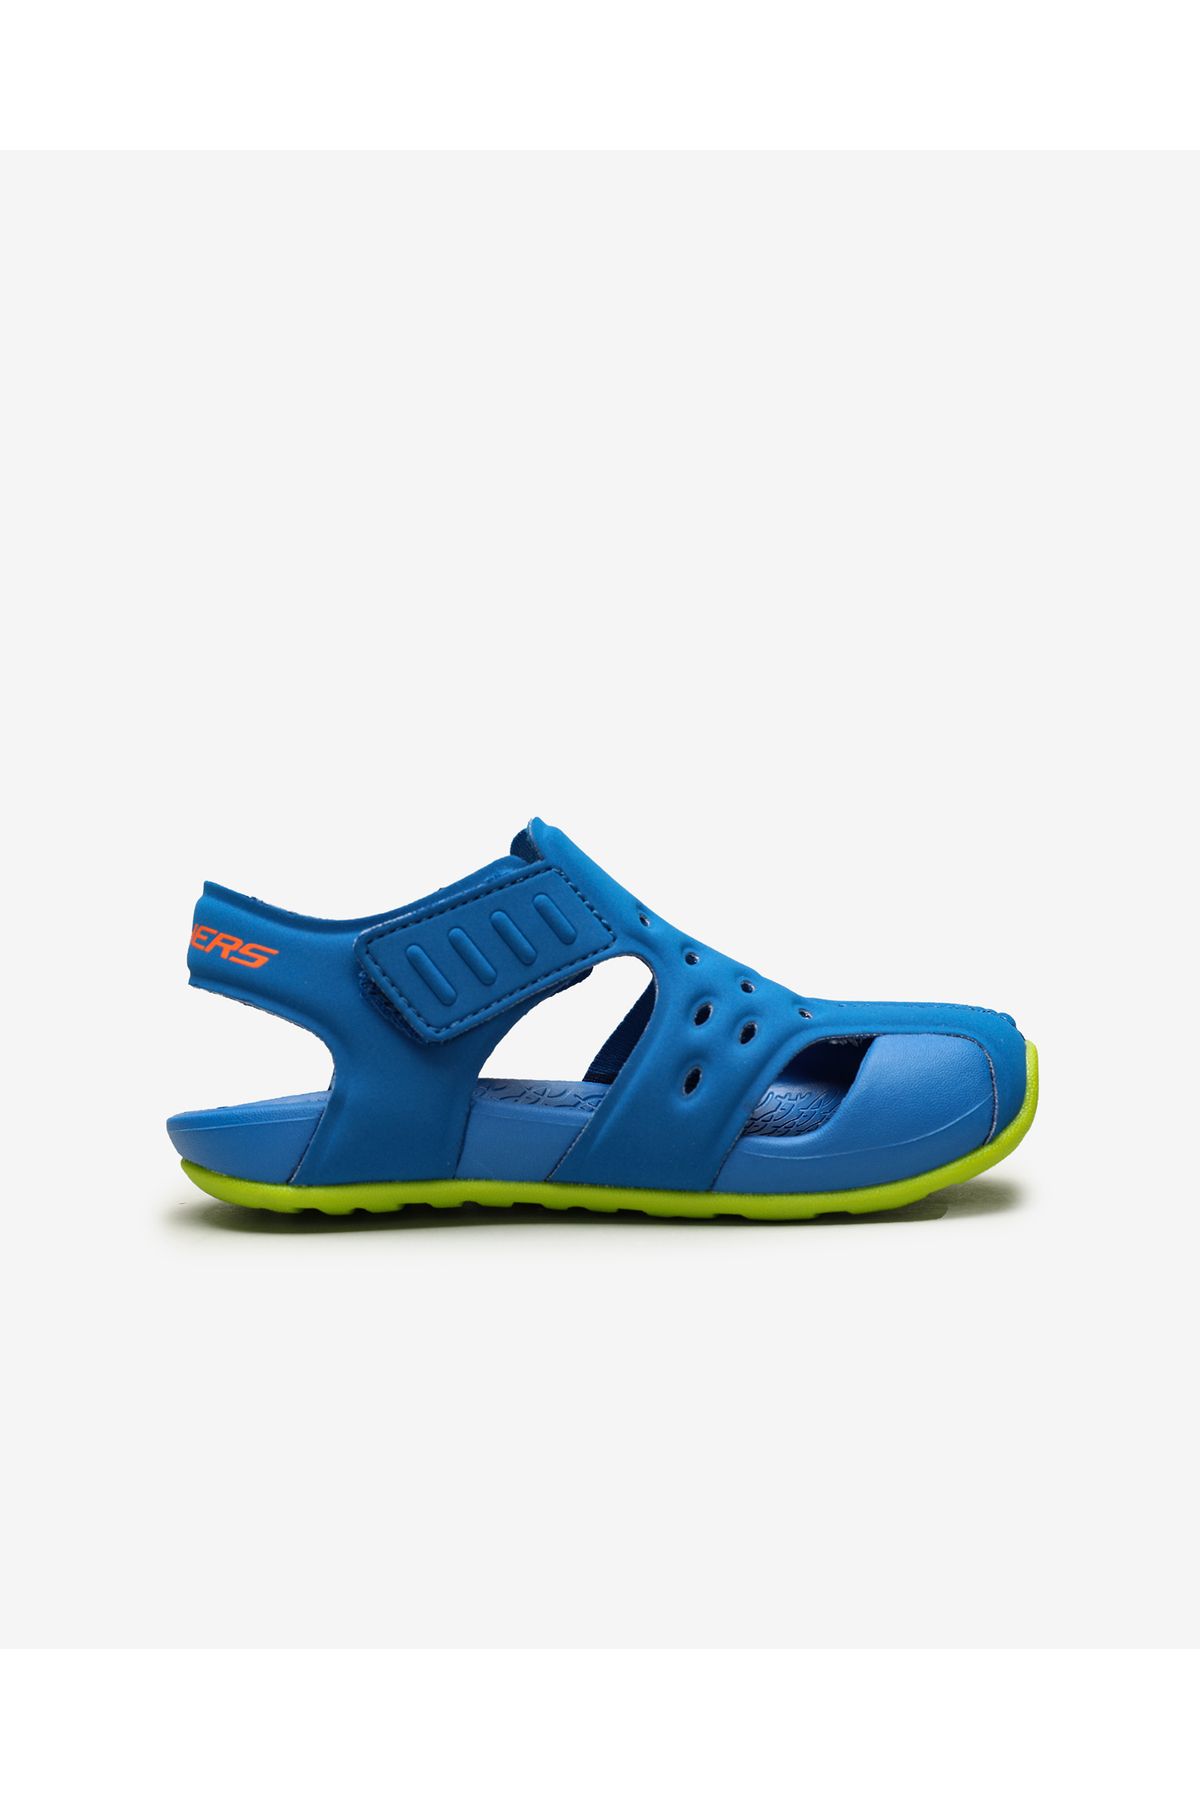 Skechers Side Wave Boy Sandals Blue 92330n bllm